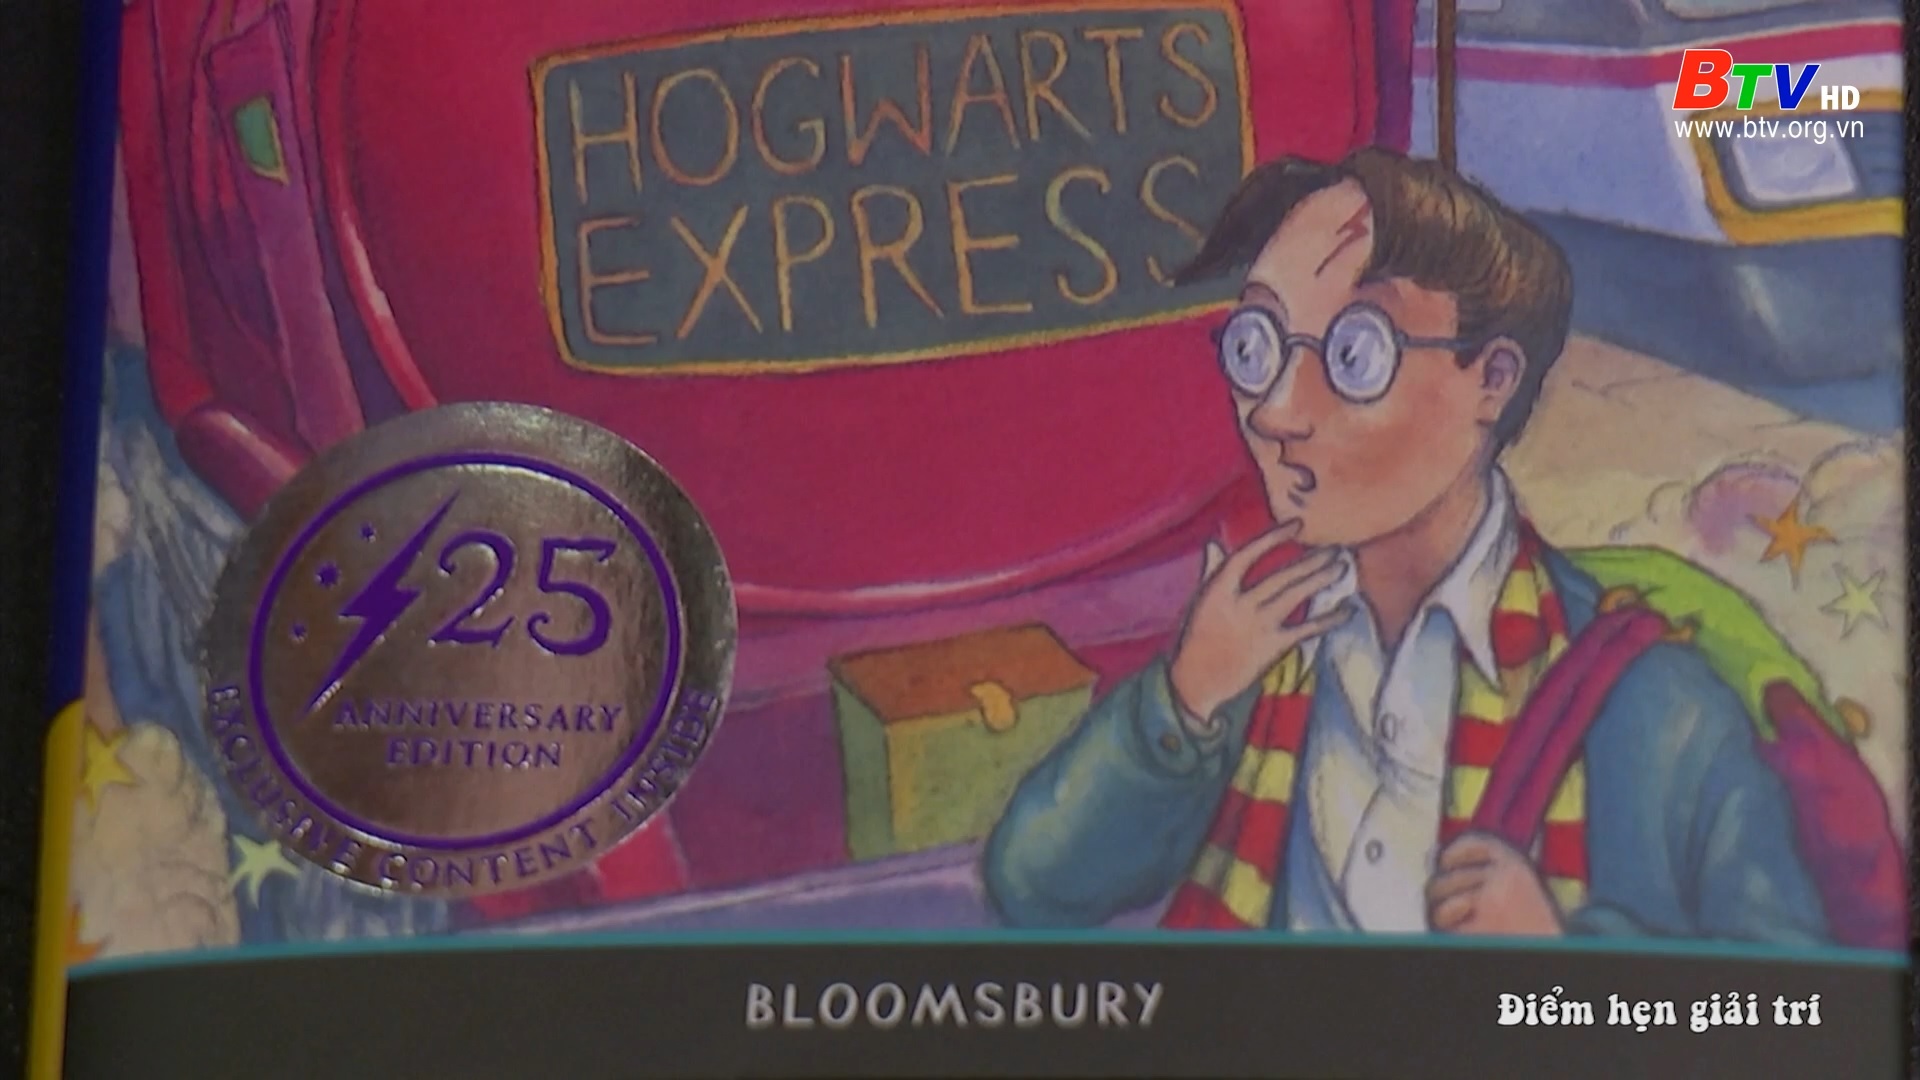 Cuốn truyện “Harry Potter và hòn đá phù thủy” kỷ niệm 25 năm xuất bản